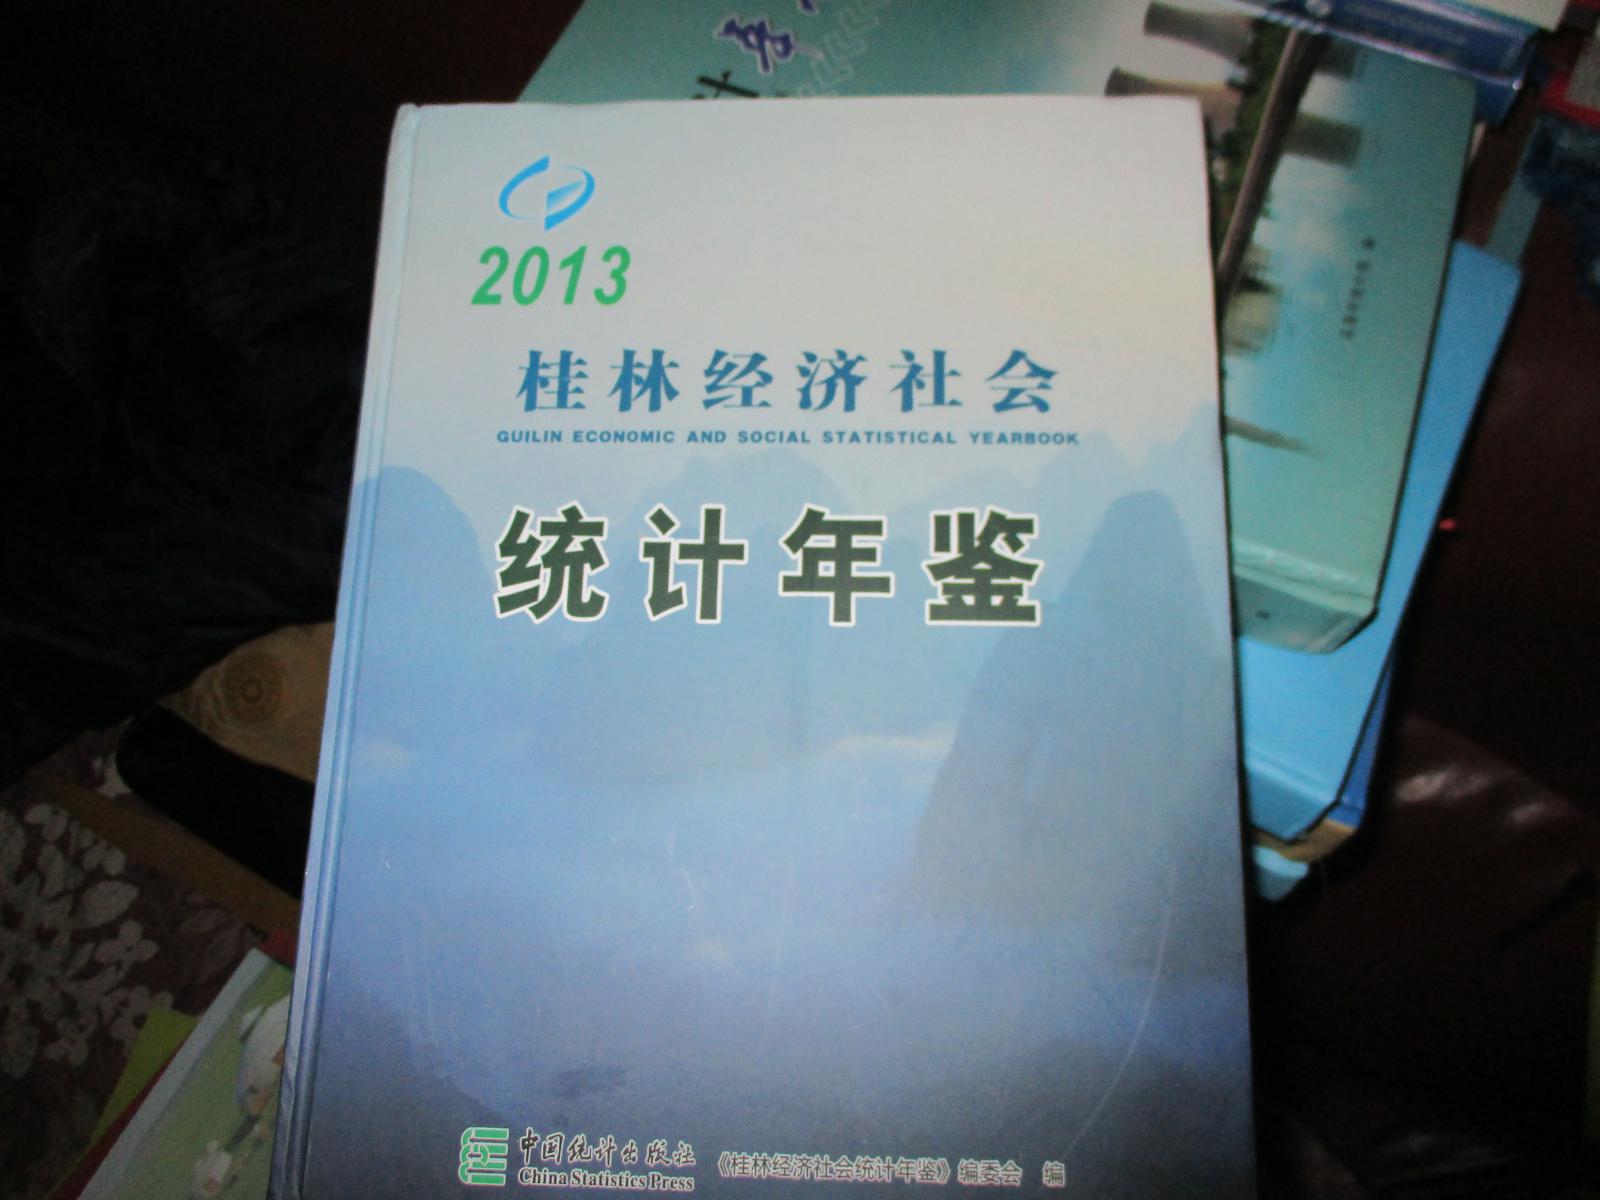 桂林经济社会统计年鉴2013